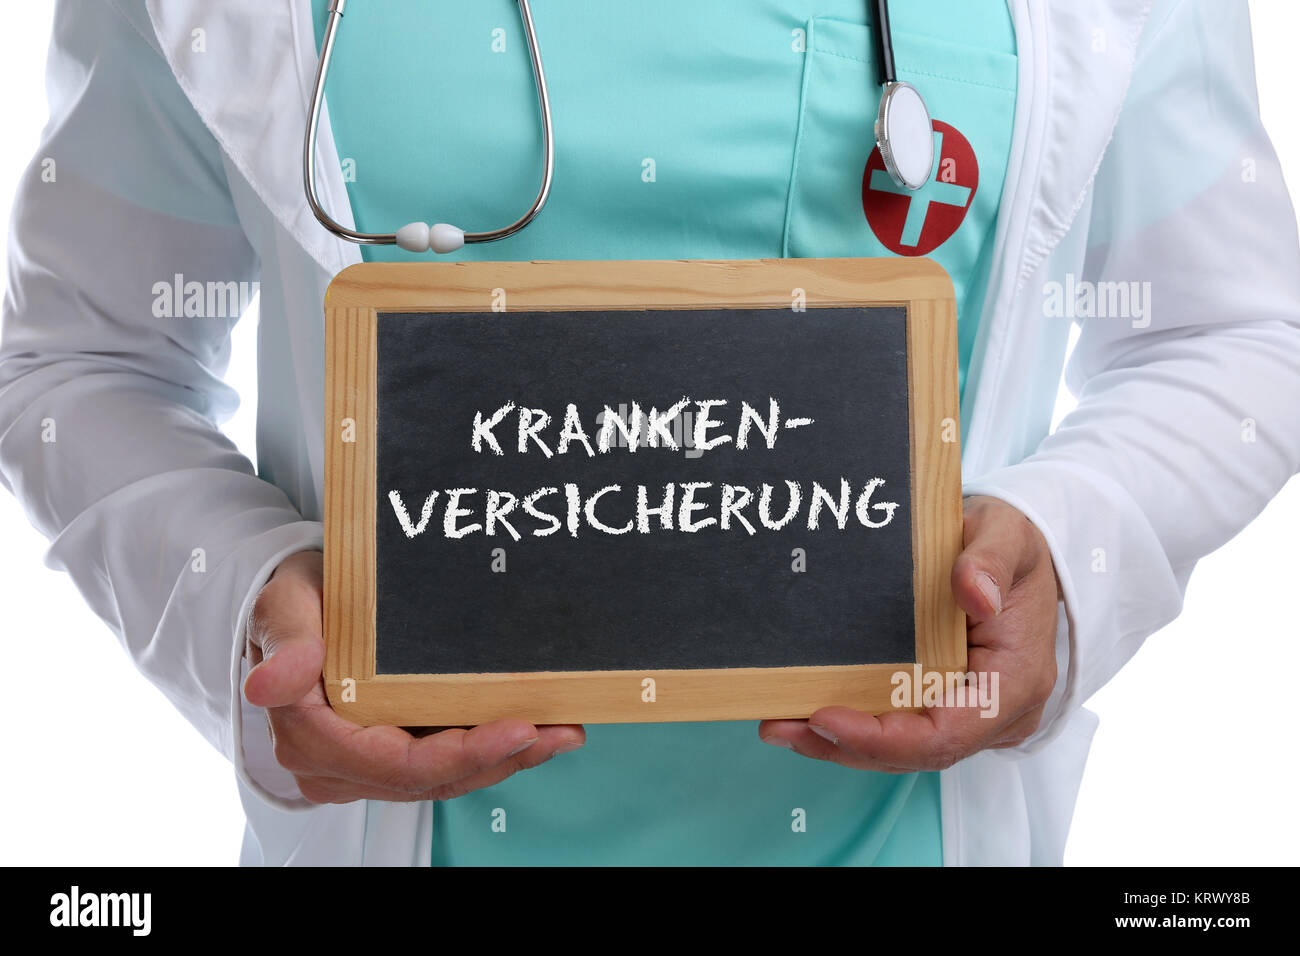 Krankenversicherung Versicherung Gesundheit Vorsorge Medizin junger Arzt Doktor mit Schild Stock Photo